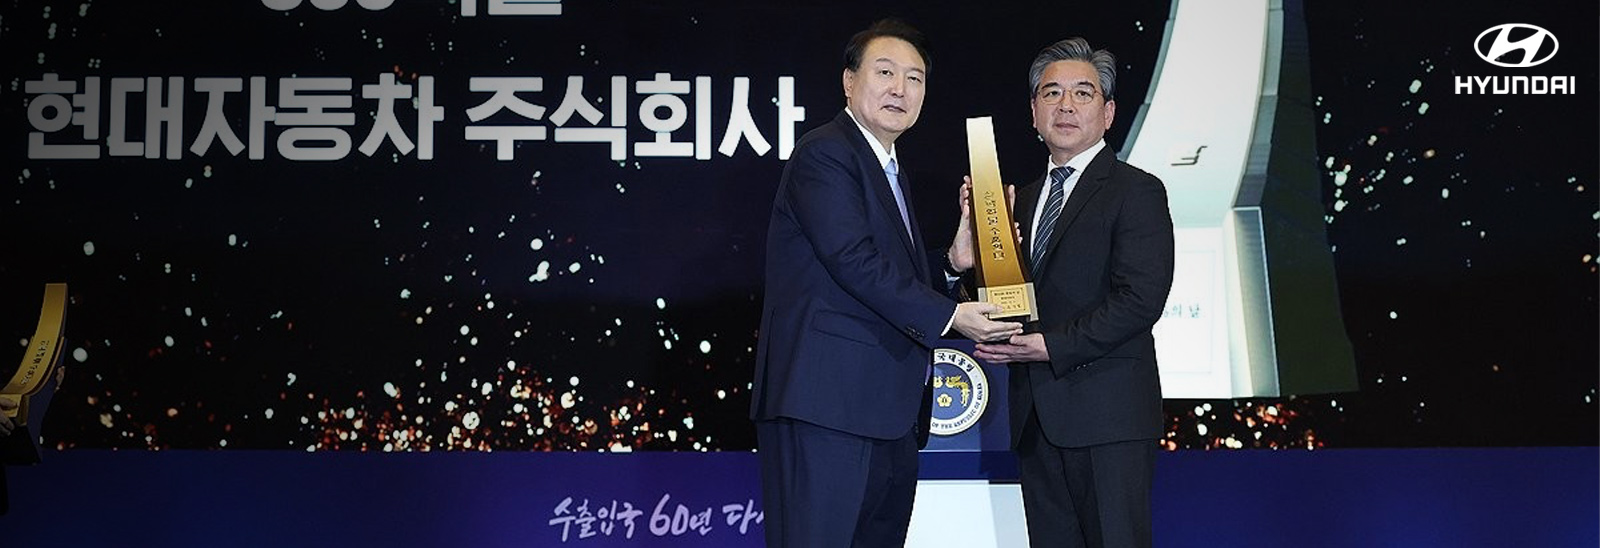 Ejecutivos de Hyundai muestran premio 'Top of Export'